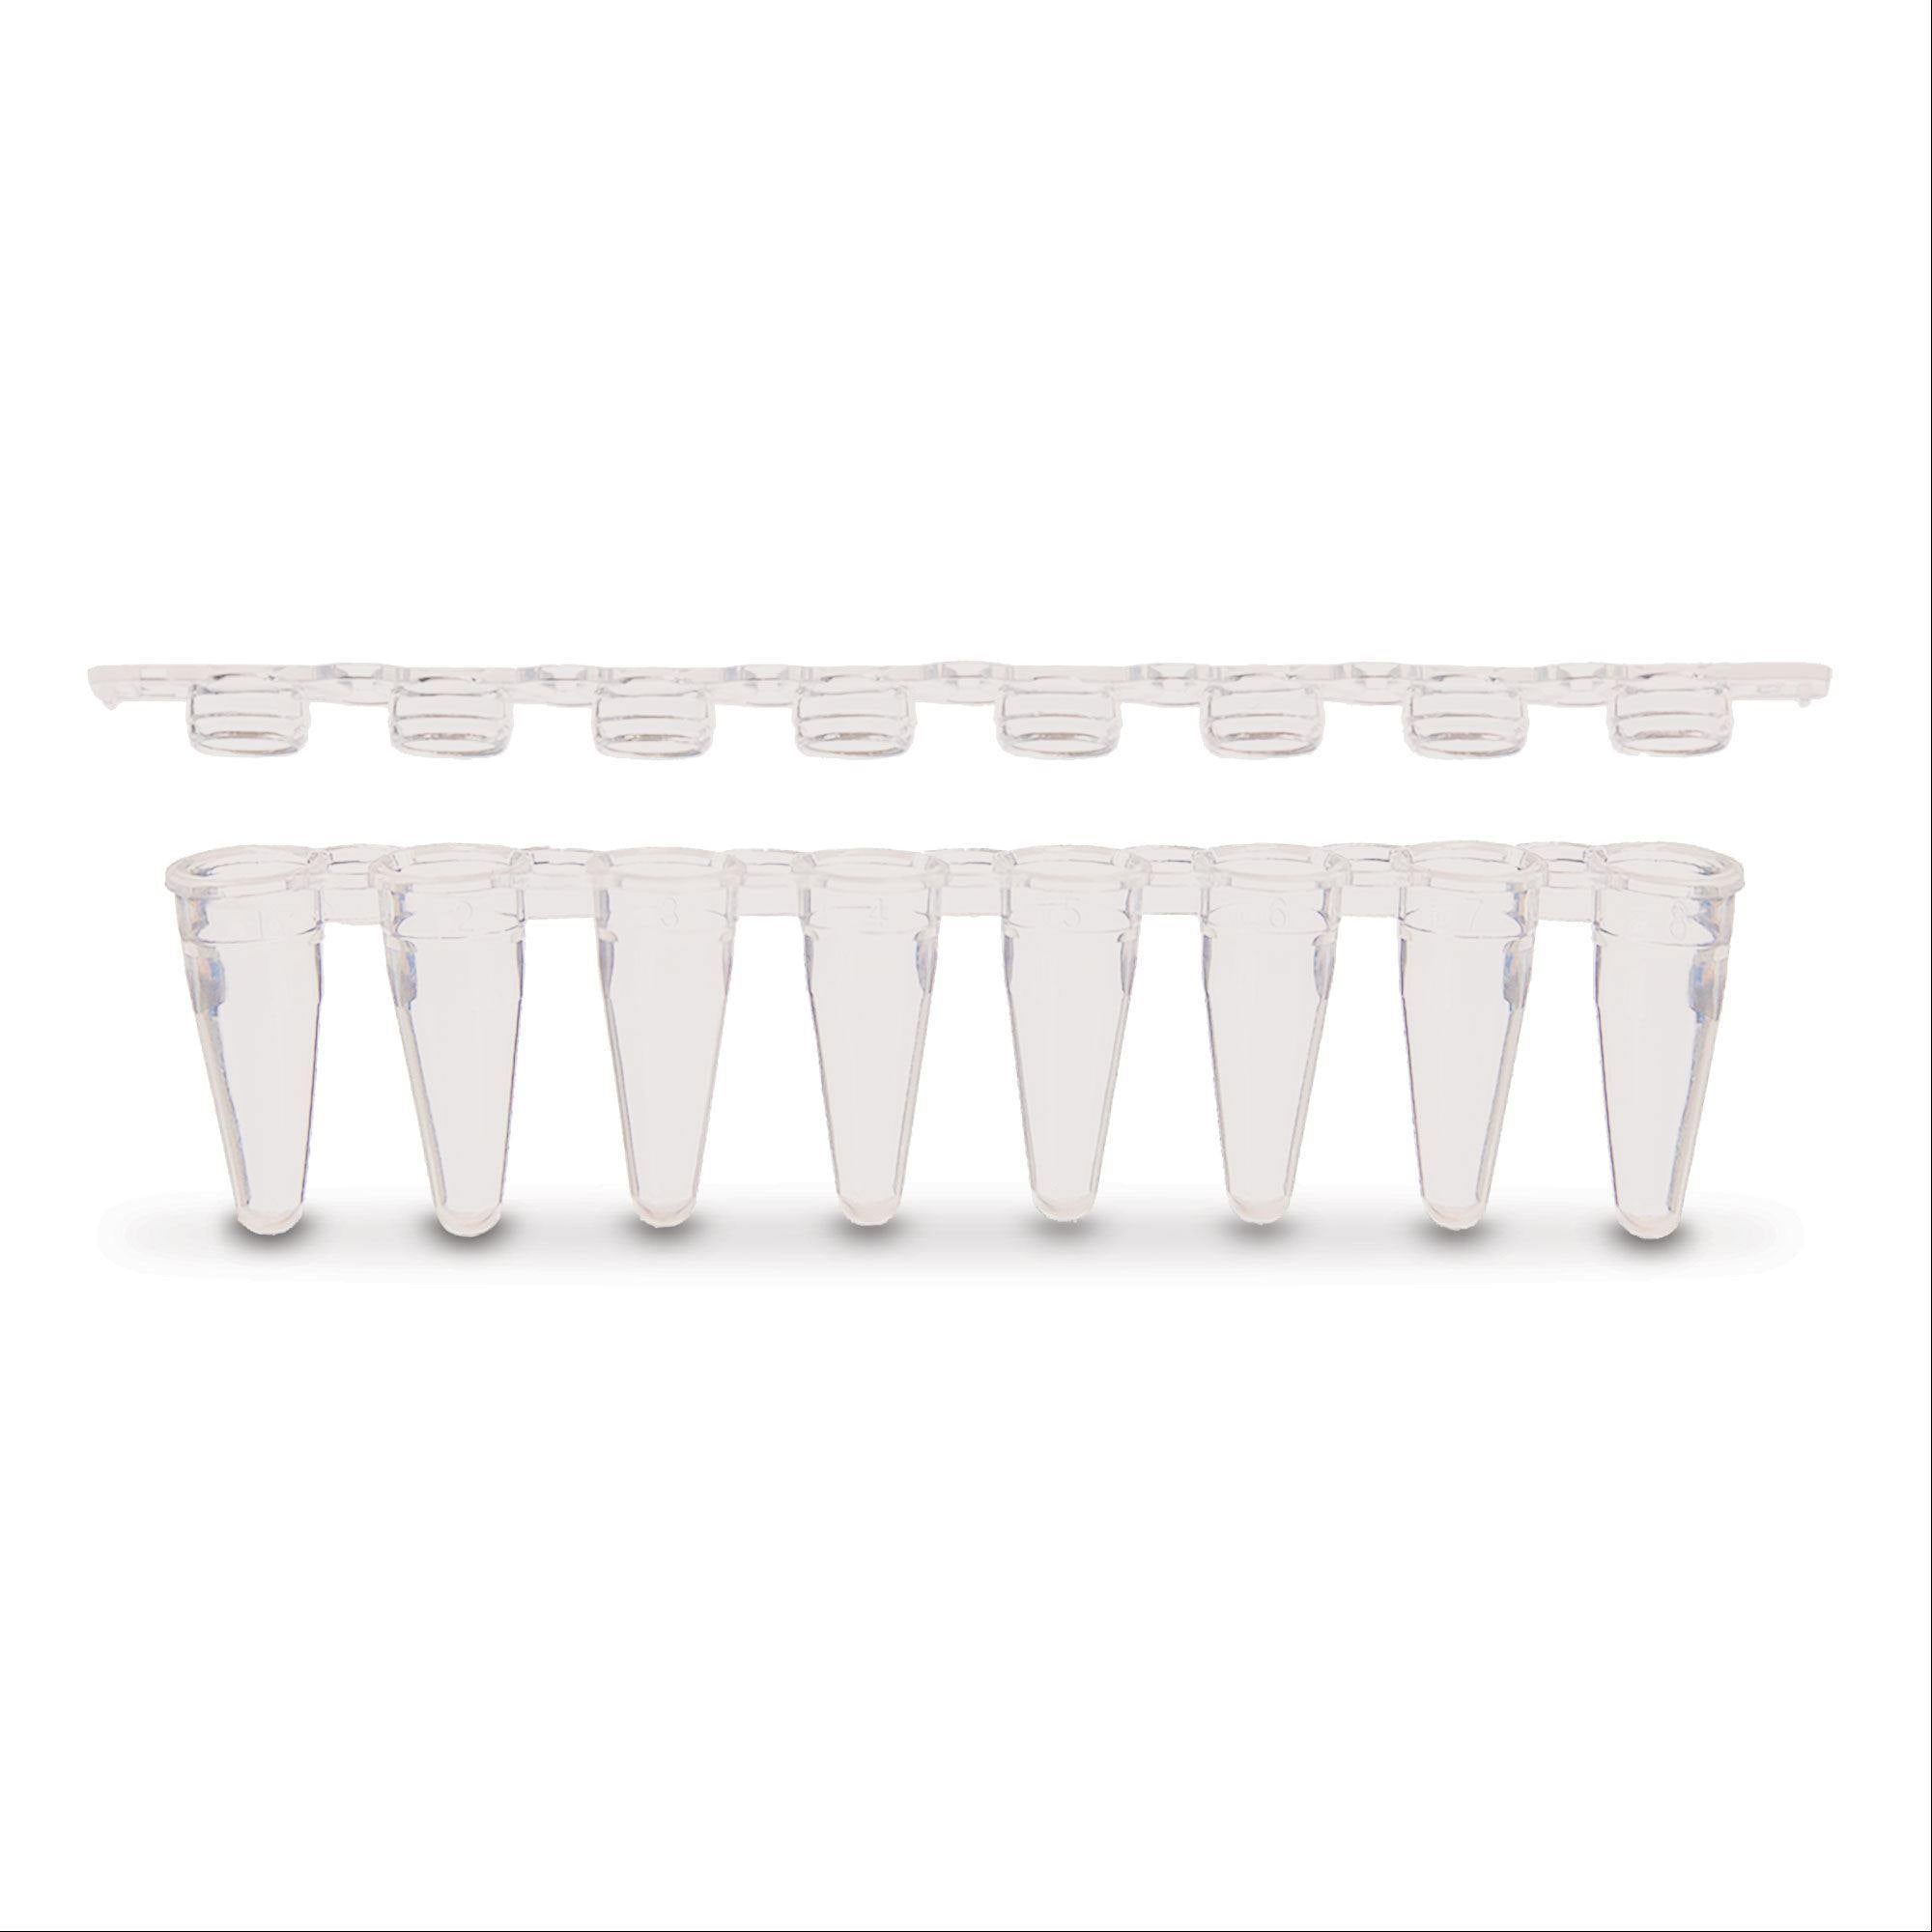 PCR Tubes with Strip Dome Caps Dome Cap • Clear ,80 / pk - Axiom Medical Supplies